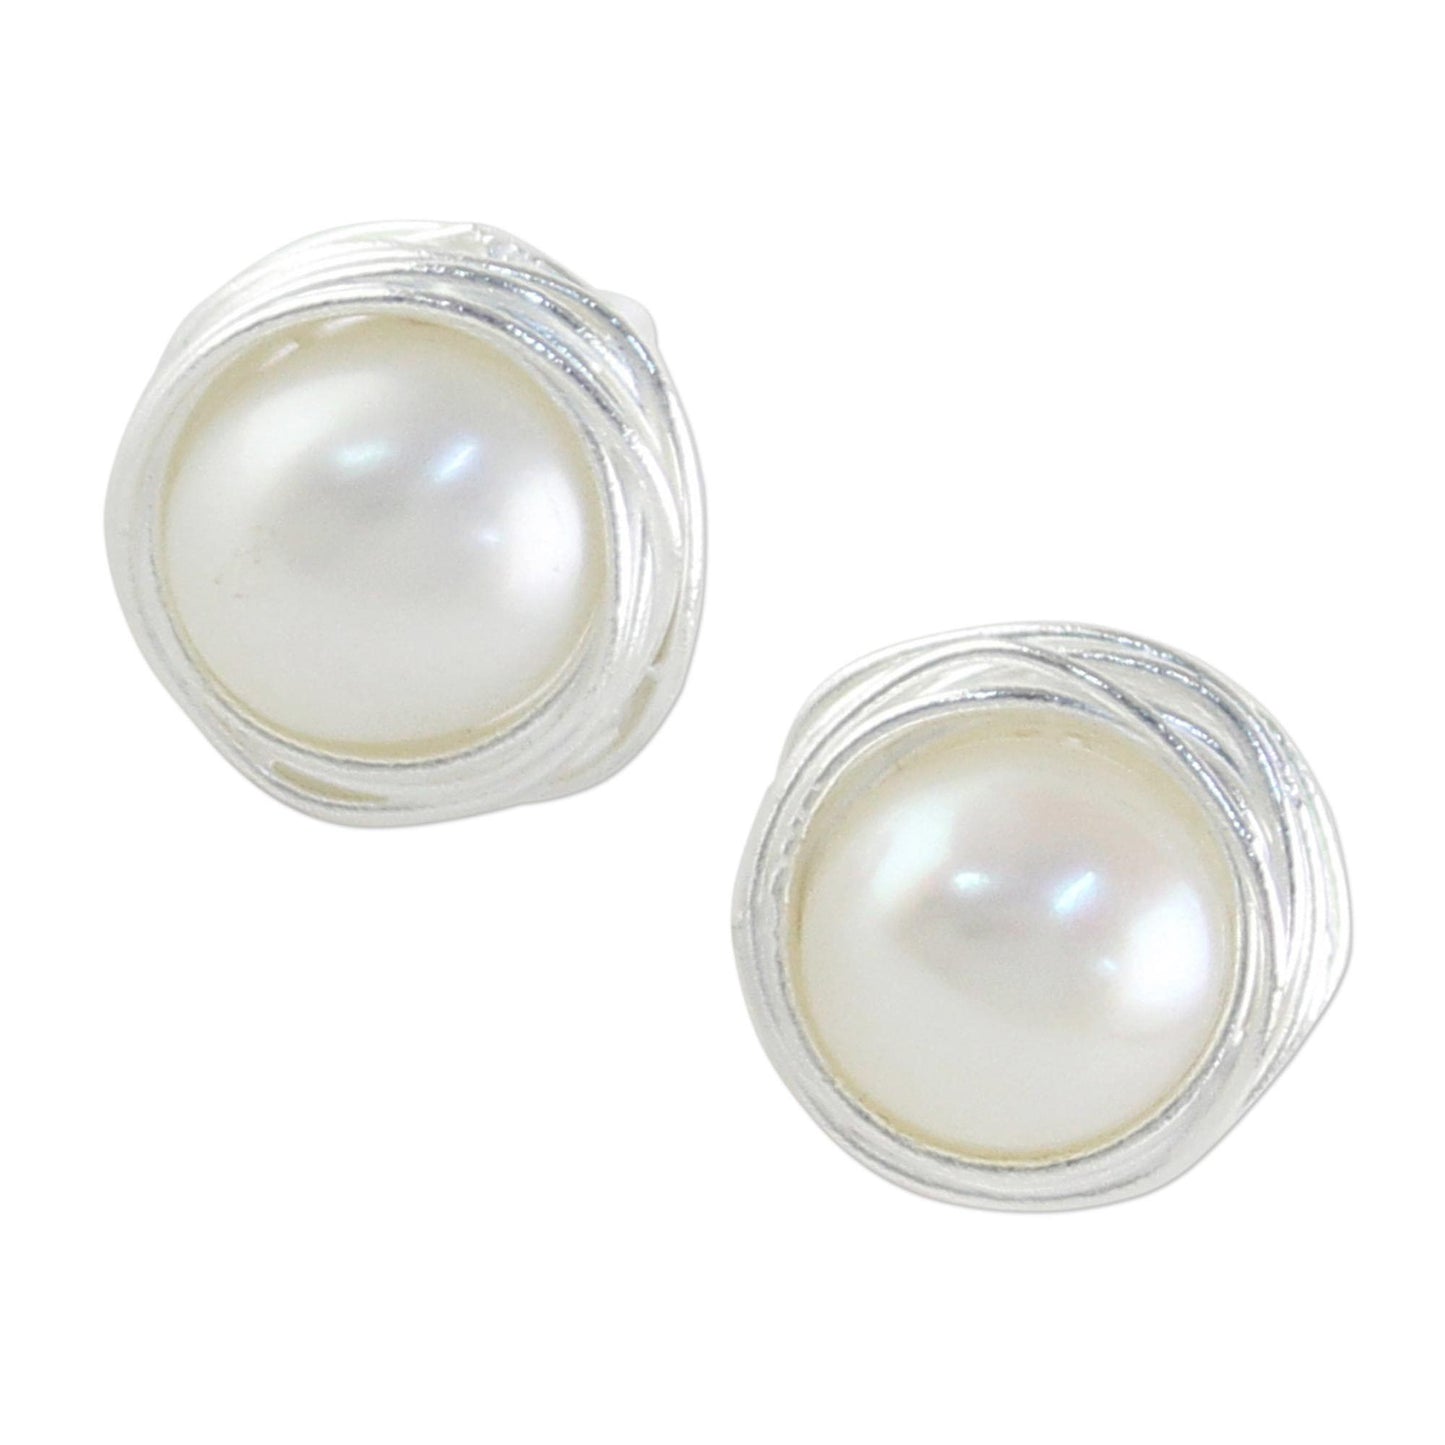 Haloed Moons Pearl & Sterling Silver Stud Earrings